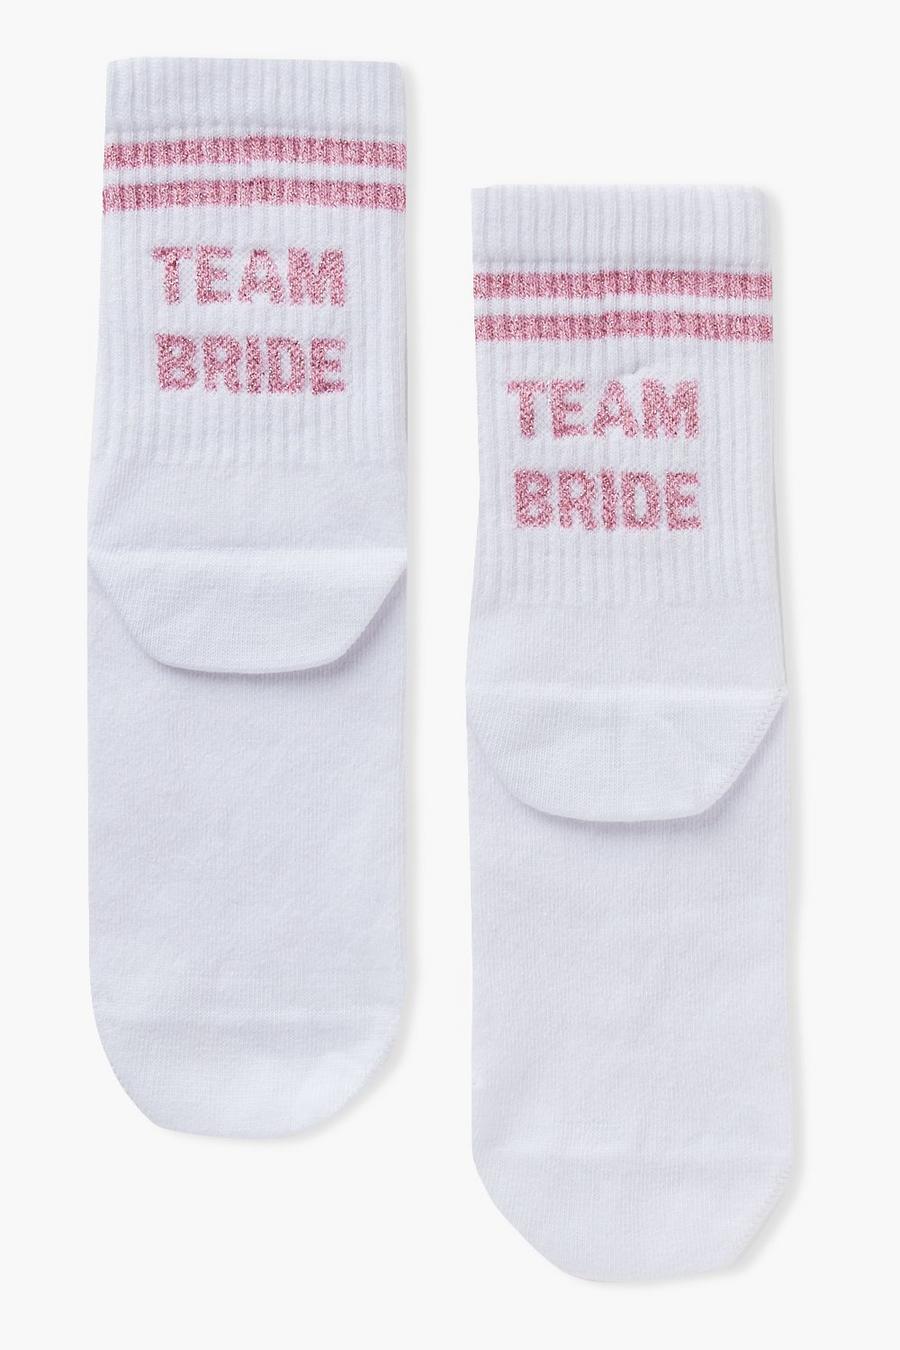 Socken mit Team Bride Slogan, Weiß white